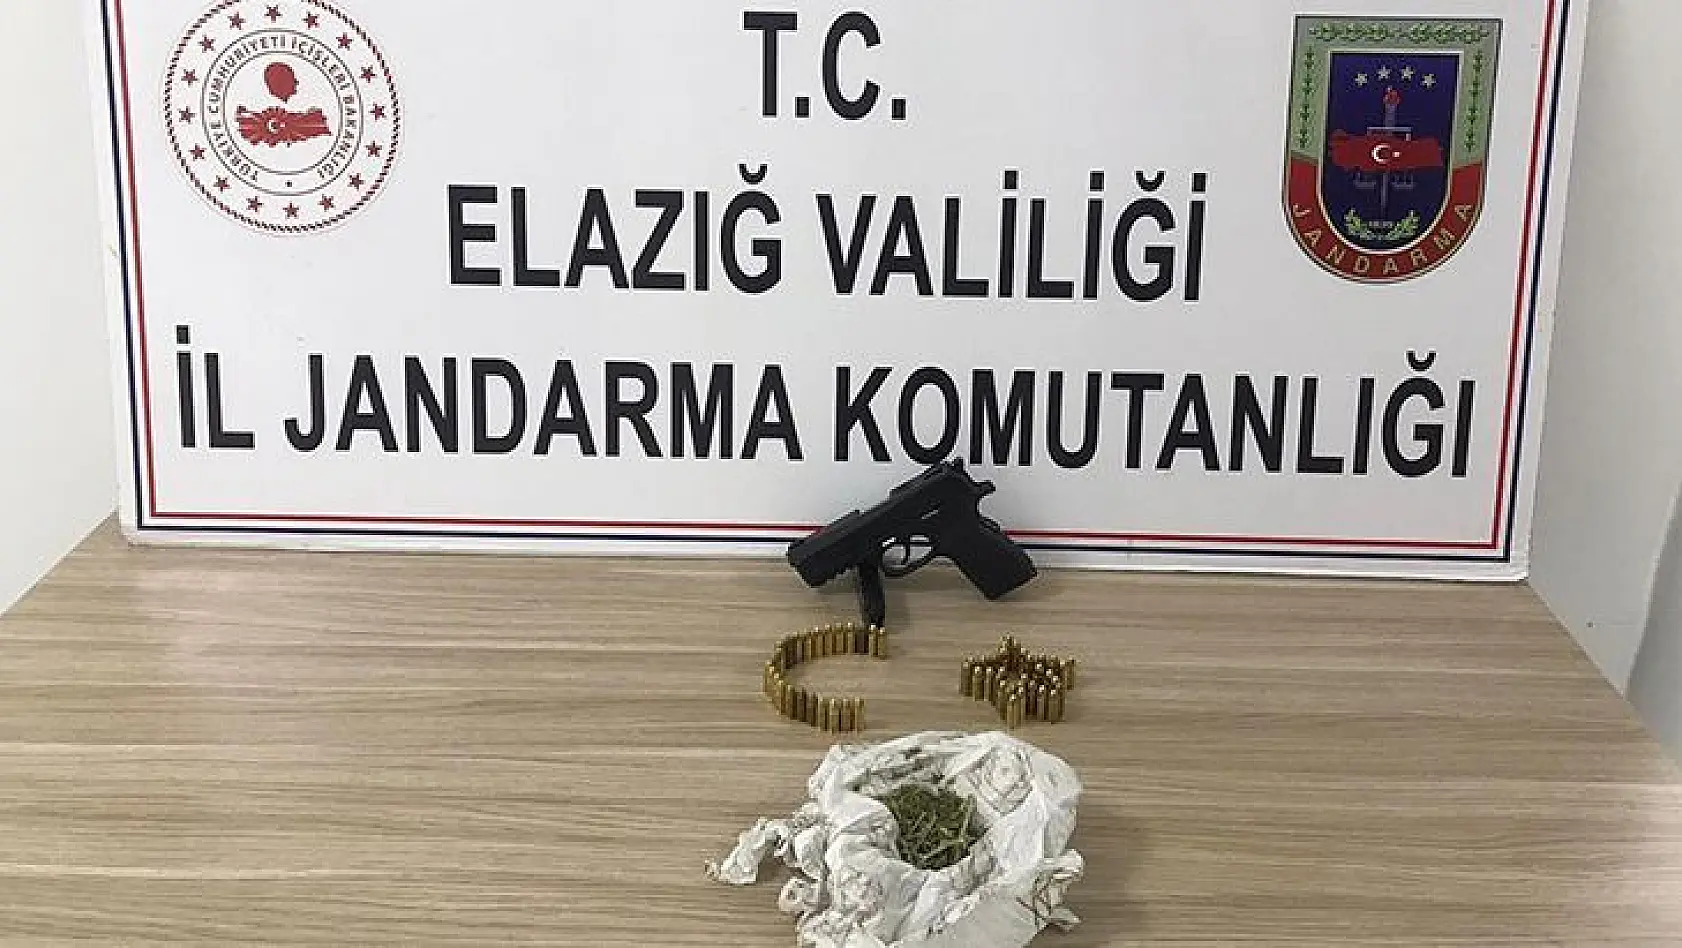 Elazığ'da Ruhsatsız Tabanca Ele Geçirildi: 1 Gözaltı